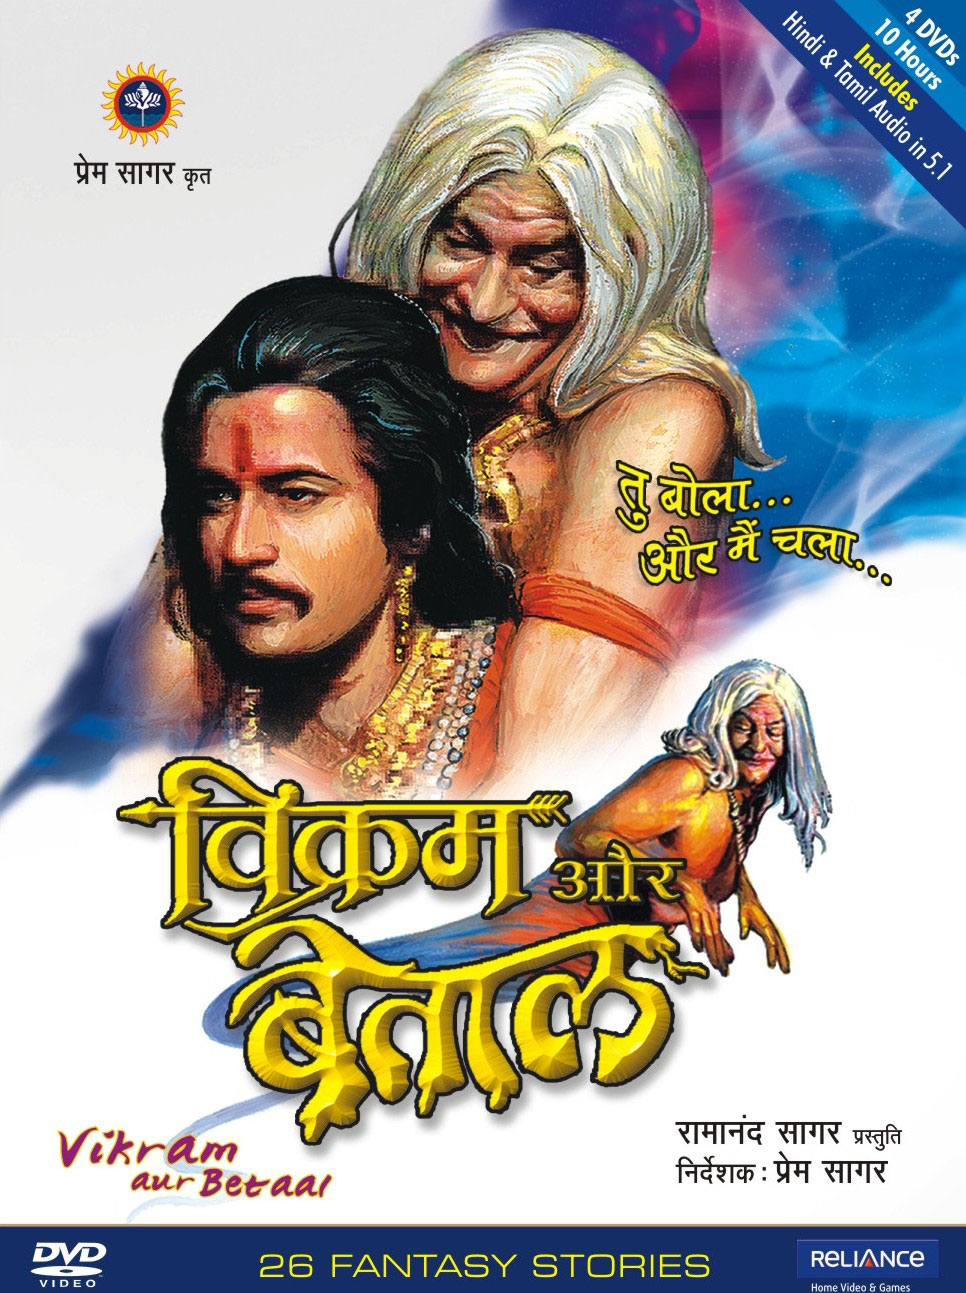 Vikram aur Betaal DVD Cover